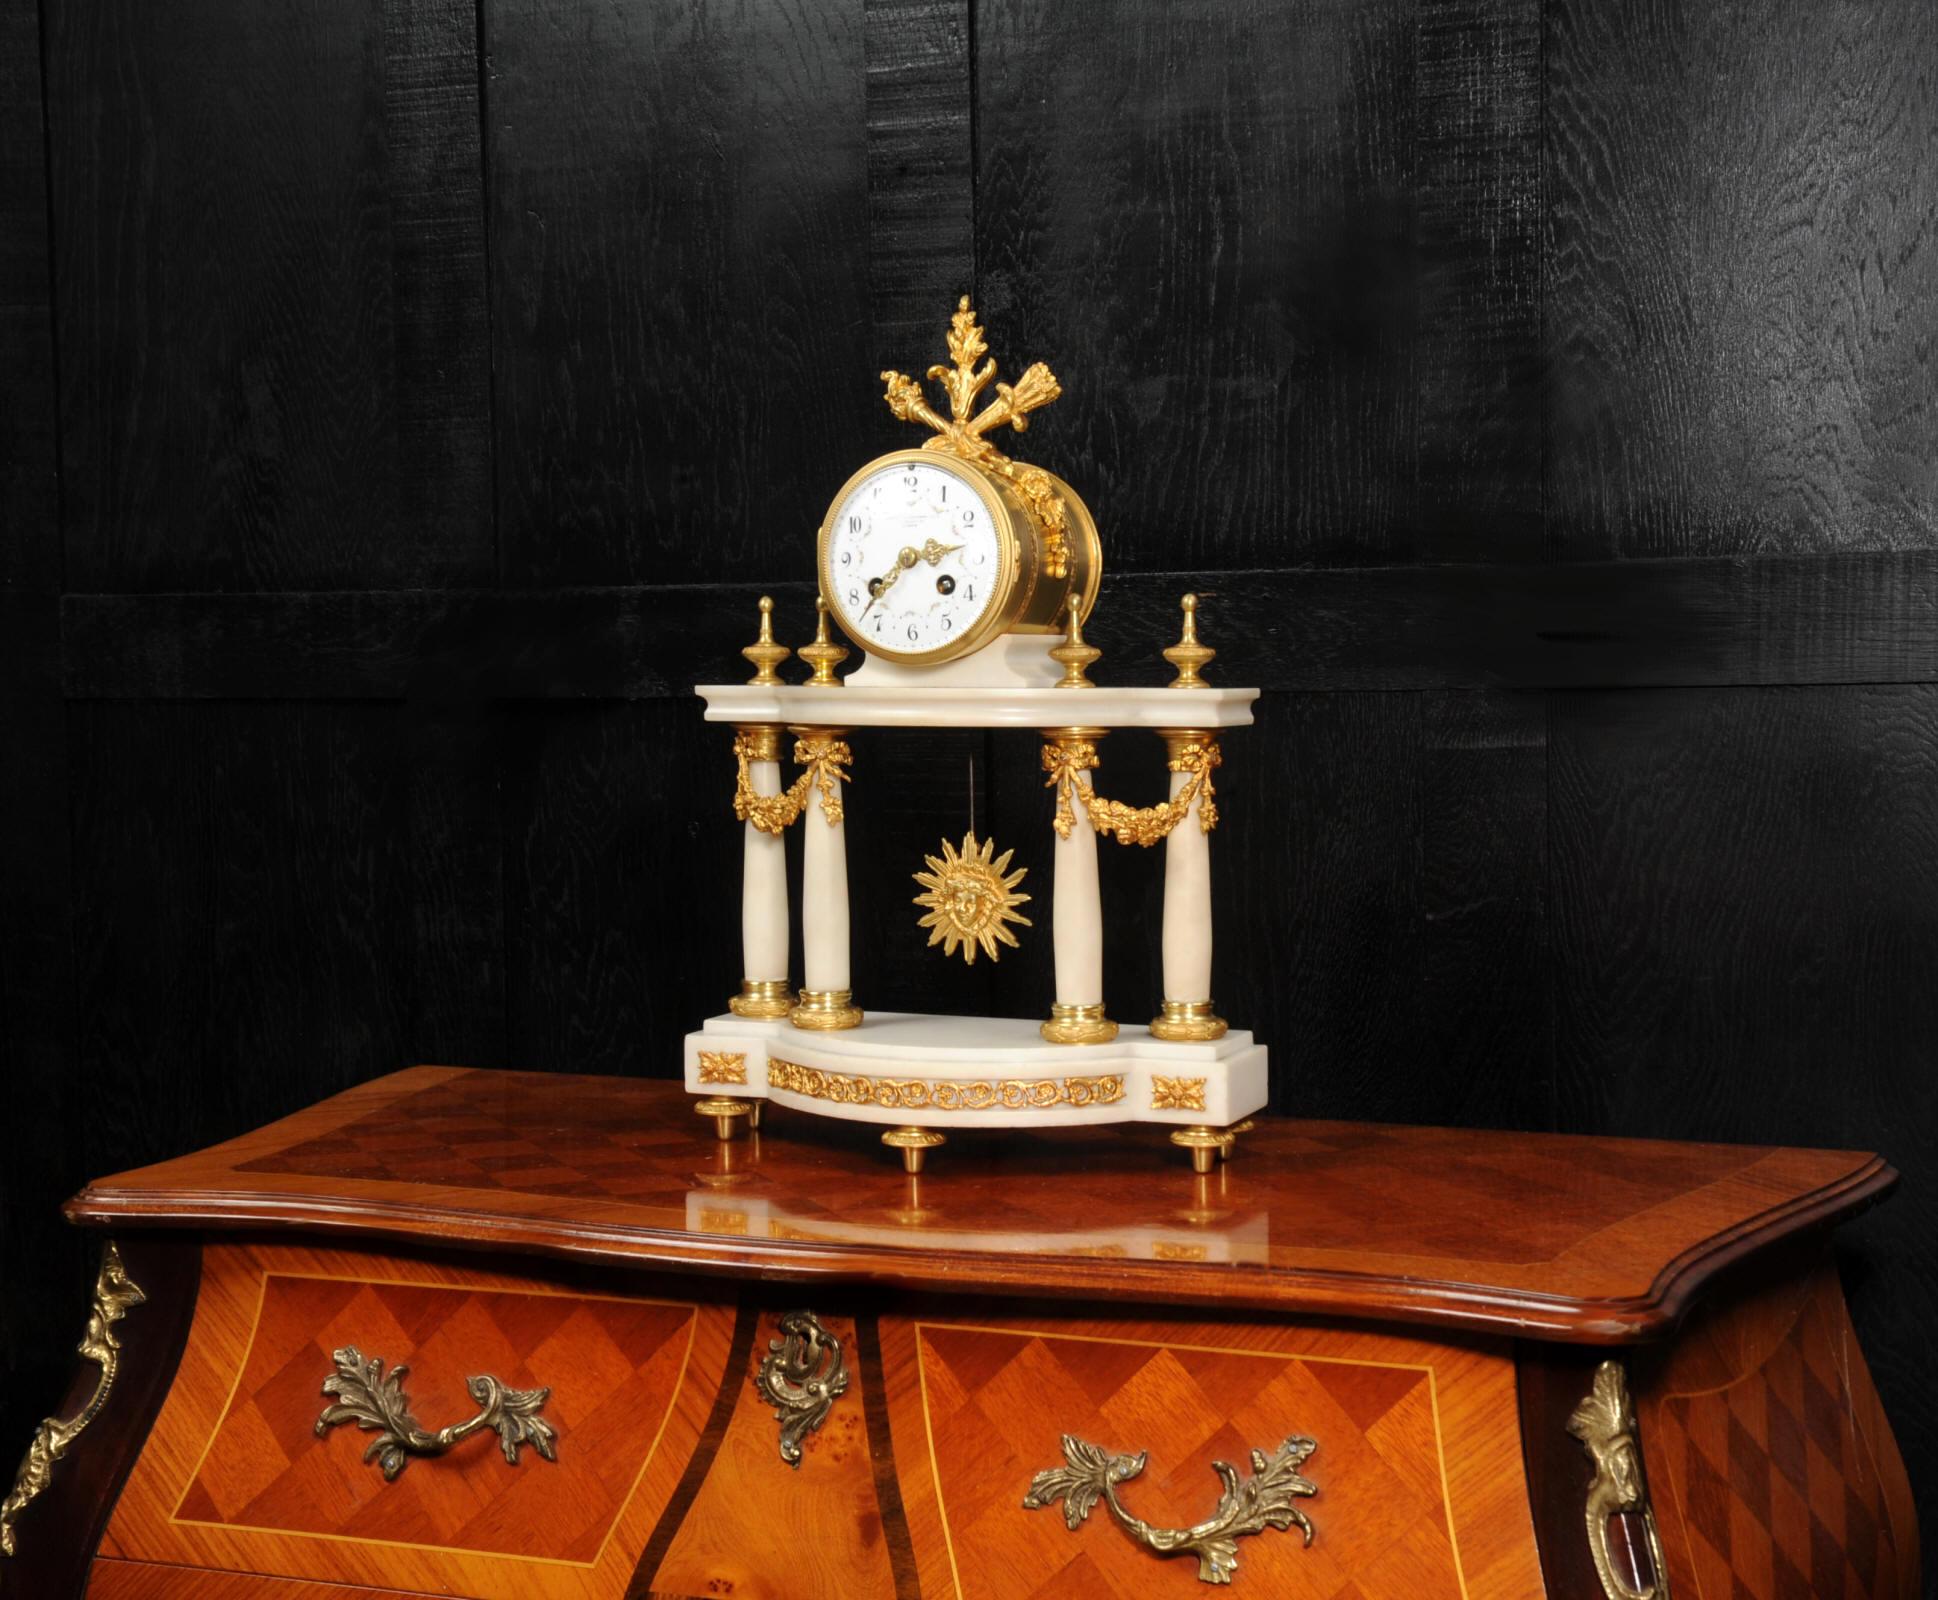 Une belle horloge à portique française ancienne vendue par la célèbre société Goldsmiths and Silversmiths Co de Regent Street, à Londres. Elle est de style classique Louis XVI, en marbre blanc monté de bronze doré. Le mouvement est maintenu en l'air